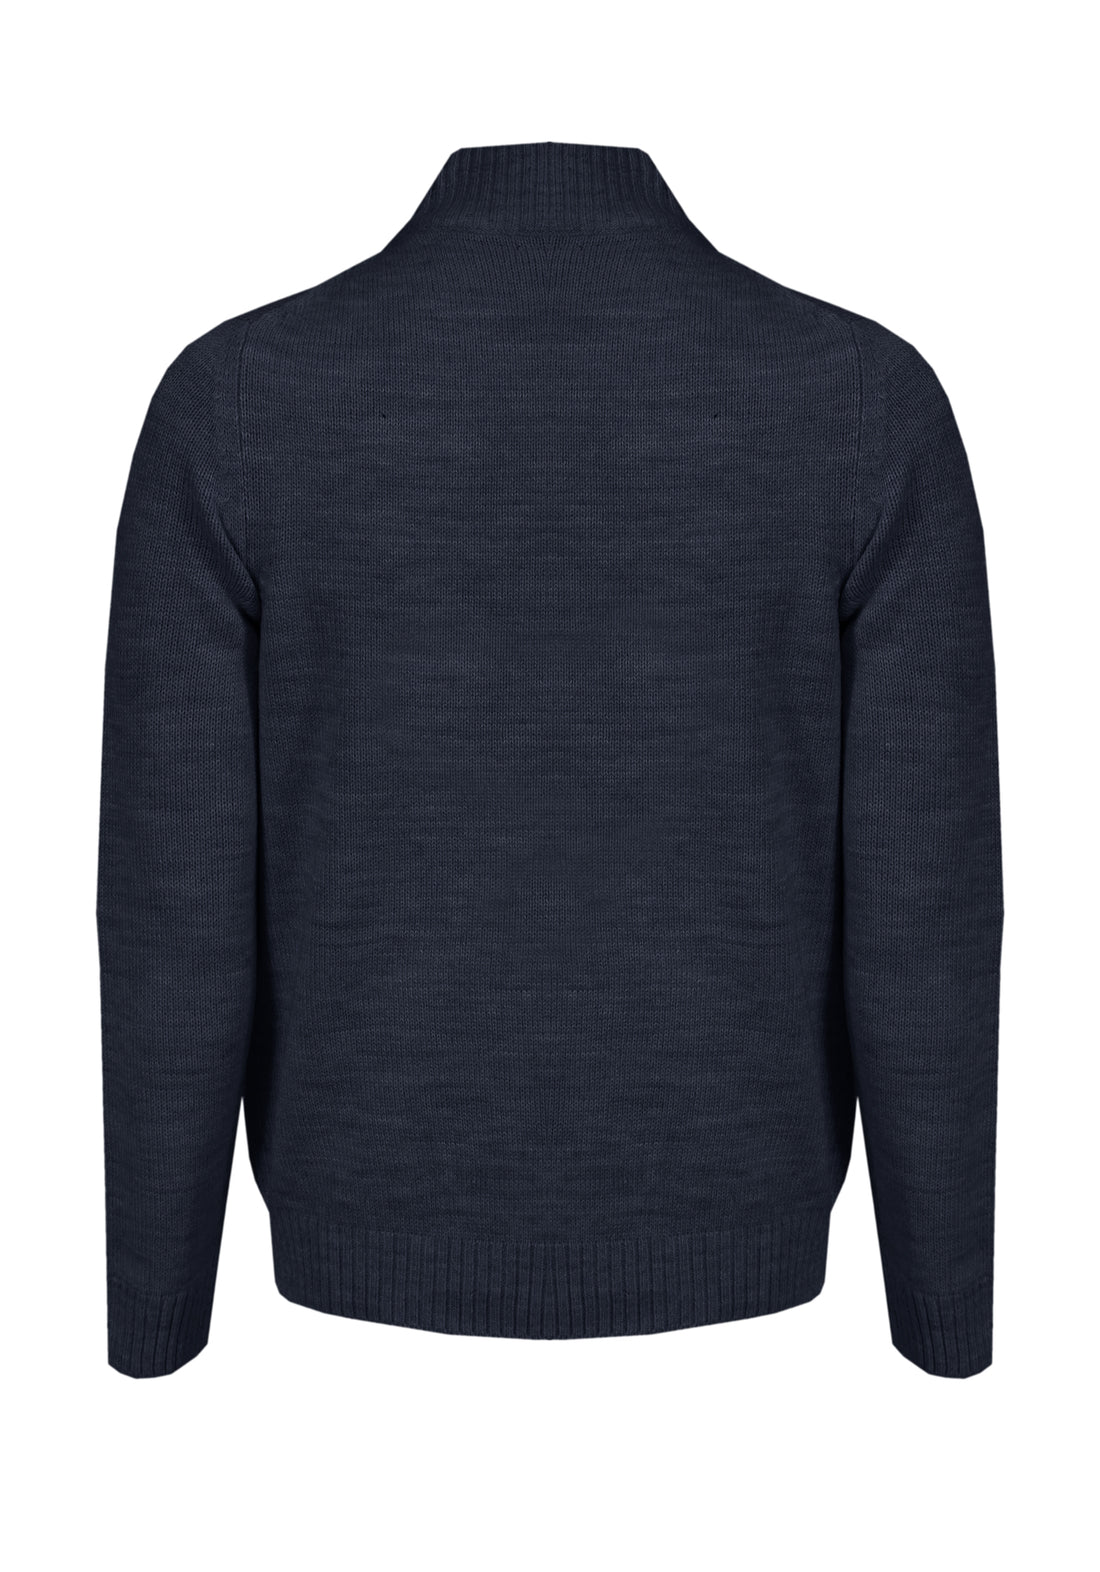 Contrast Suede Cardigan Sweater - Blue